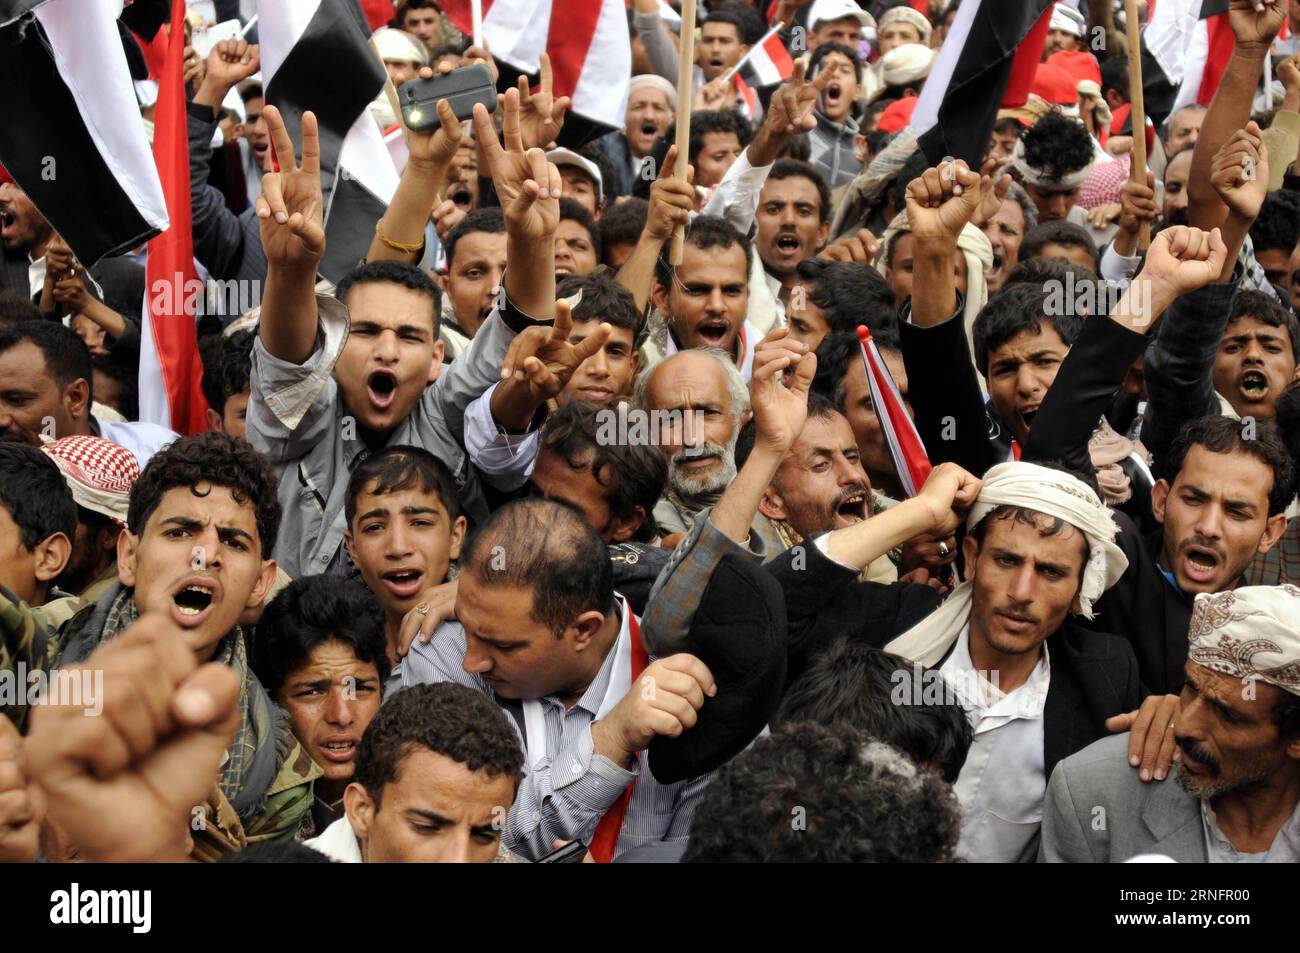 (160821) -- SANAA, 20. August 2016 -- Menschen sammeln sich, um Unterstützung für einen politischen rat in Sanaa, Jemen, 20. August 2016 zu zeigen. Millionen von Menschen aus allen jemenitischen Gebieten drängten sich am Samstag im Zentrum der jemenitischen Hauptstadt Sanaa, um die Bildung eines neuen regierenden politischen rates unter dem Vorsitz der Huthi-Rebellen und ihrer verbündeten mächtigen Partei des ehemaligen Präsidenten Ali Abdullah Saleh zu unterstützen und zu segnen. )(zcc) JEMEN-SANAA-RALLY HanixAli PUBLICATIONxNOTxINxCHN 160821 Sanaa 20. August 2016 Prominente Rally, um Unterstützung für einen politischen Rat in Sanaa zu zeigen Jemen 20. August 2016 Millionen Prominente von A Stockfoto